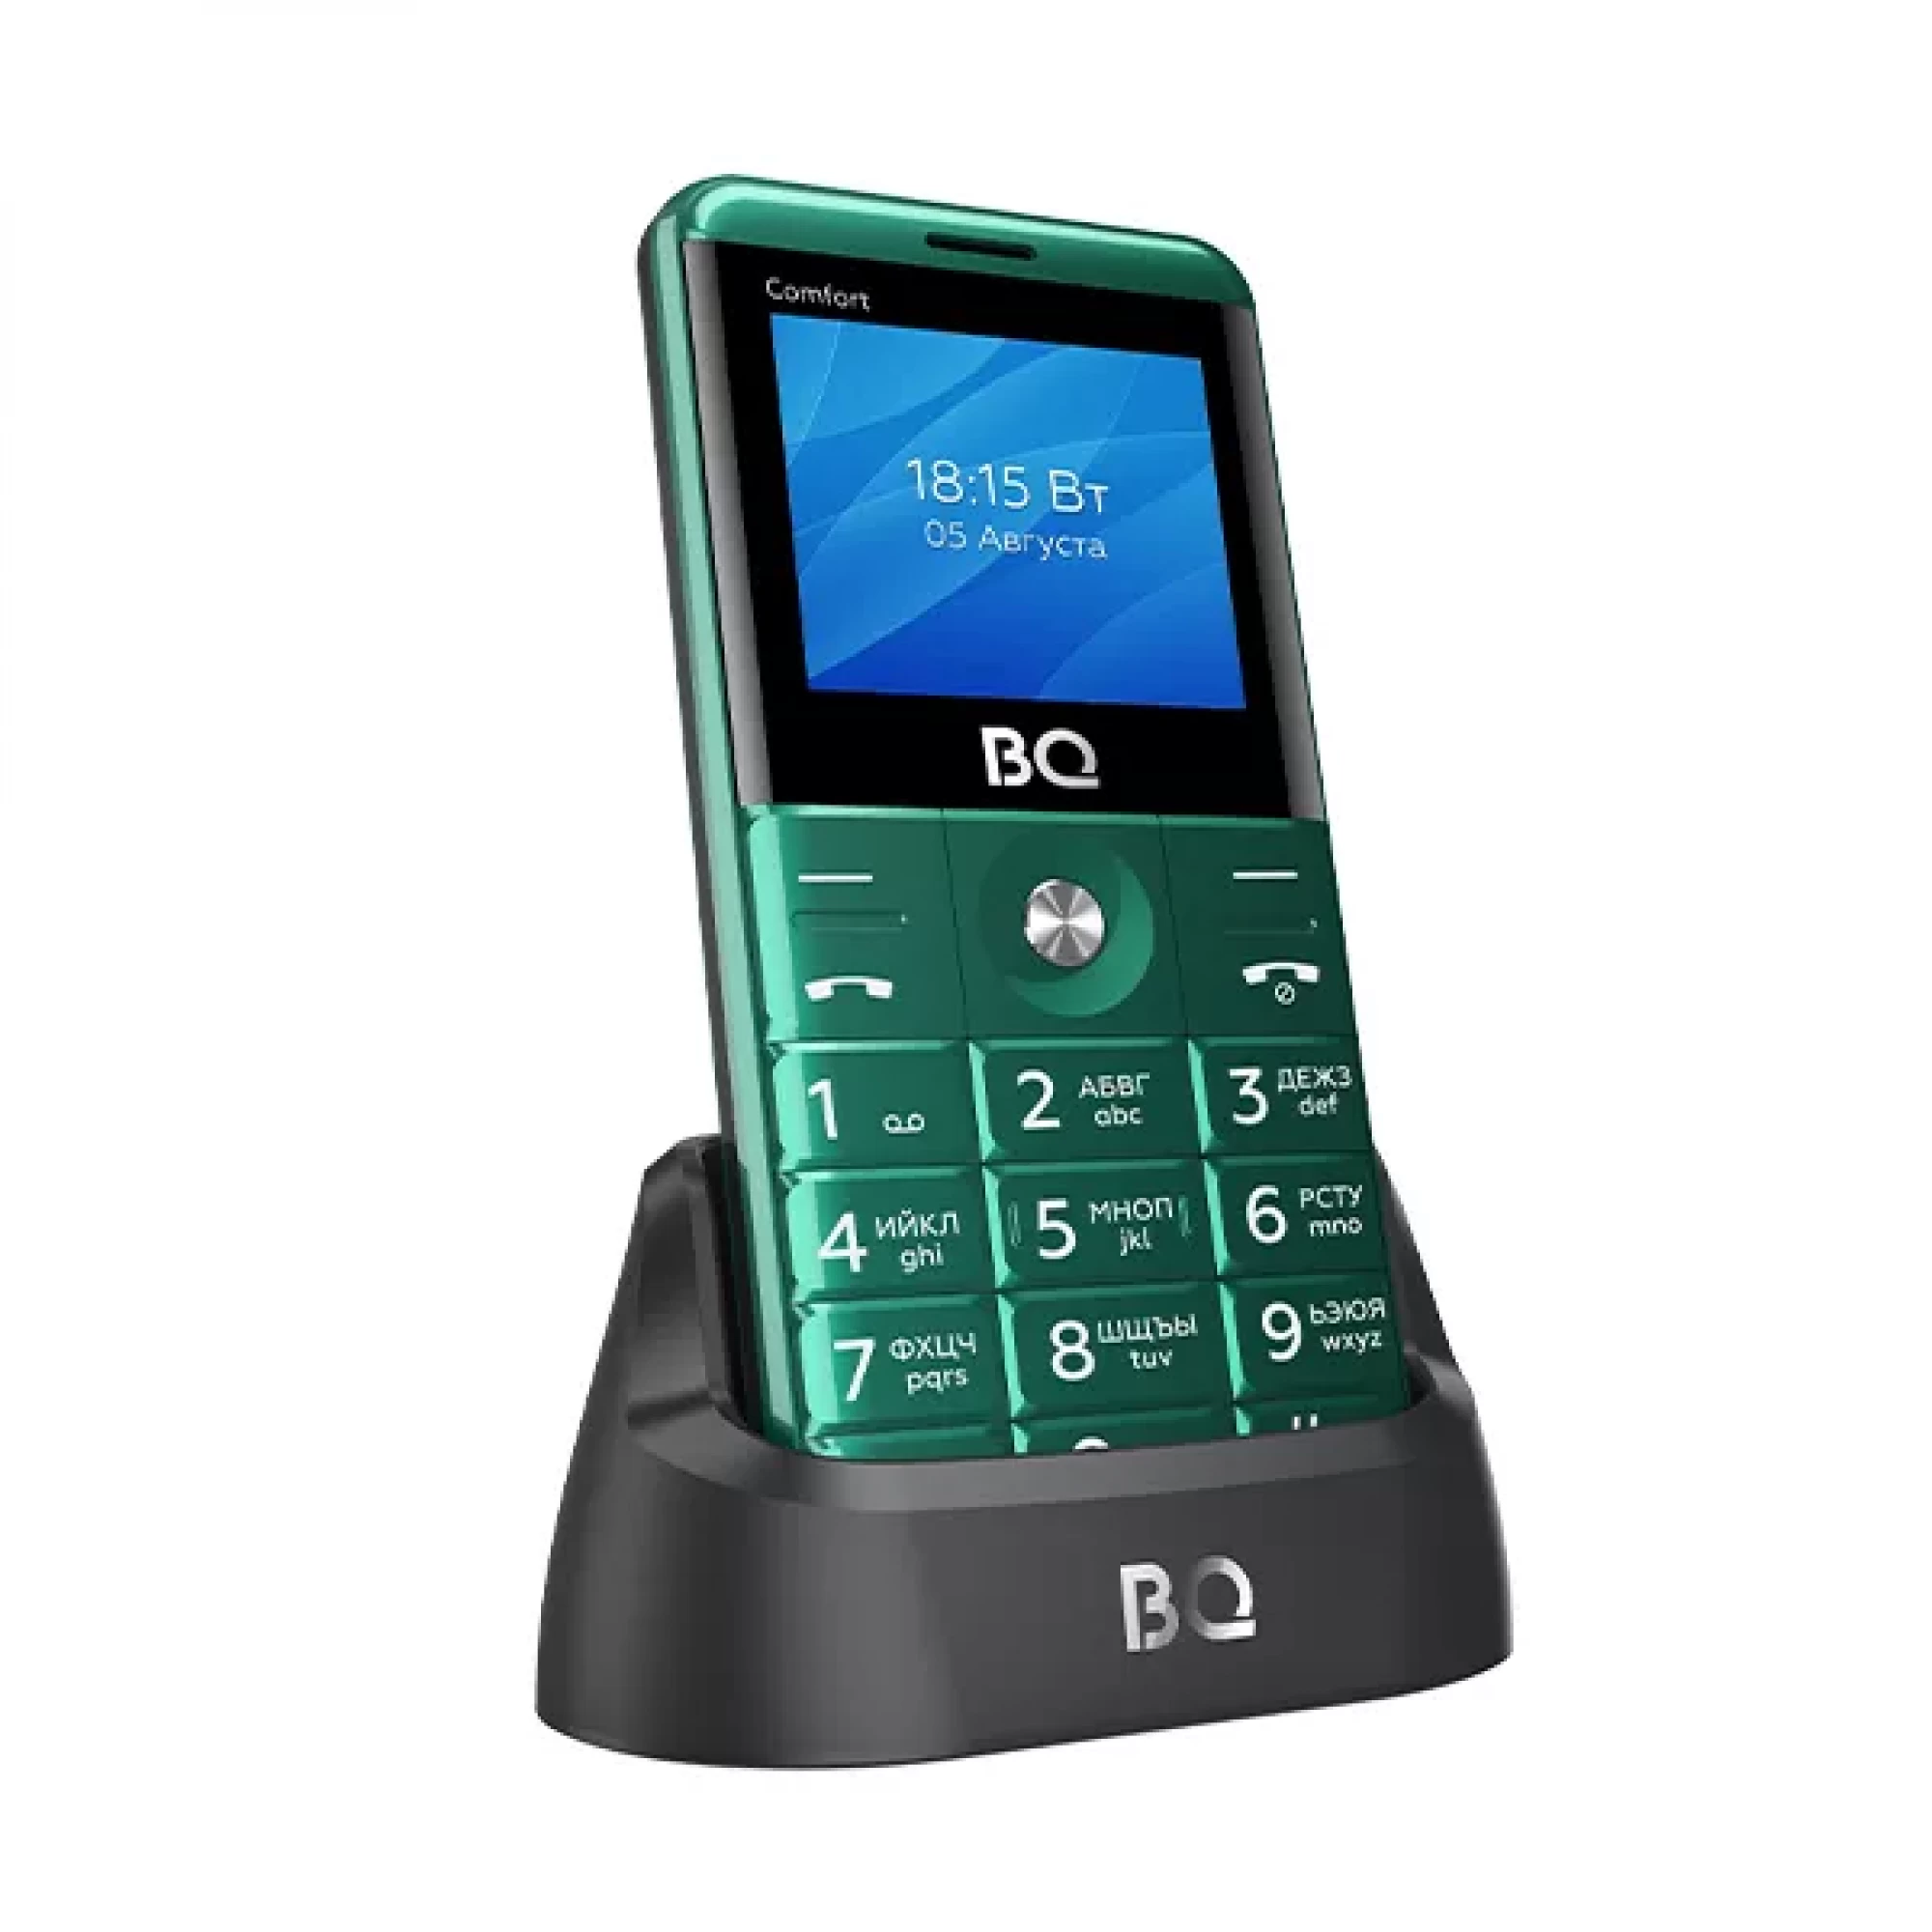 Мобильный телефон BQ BQ-2006 Comfort (зеленый)